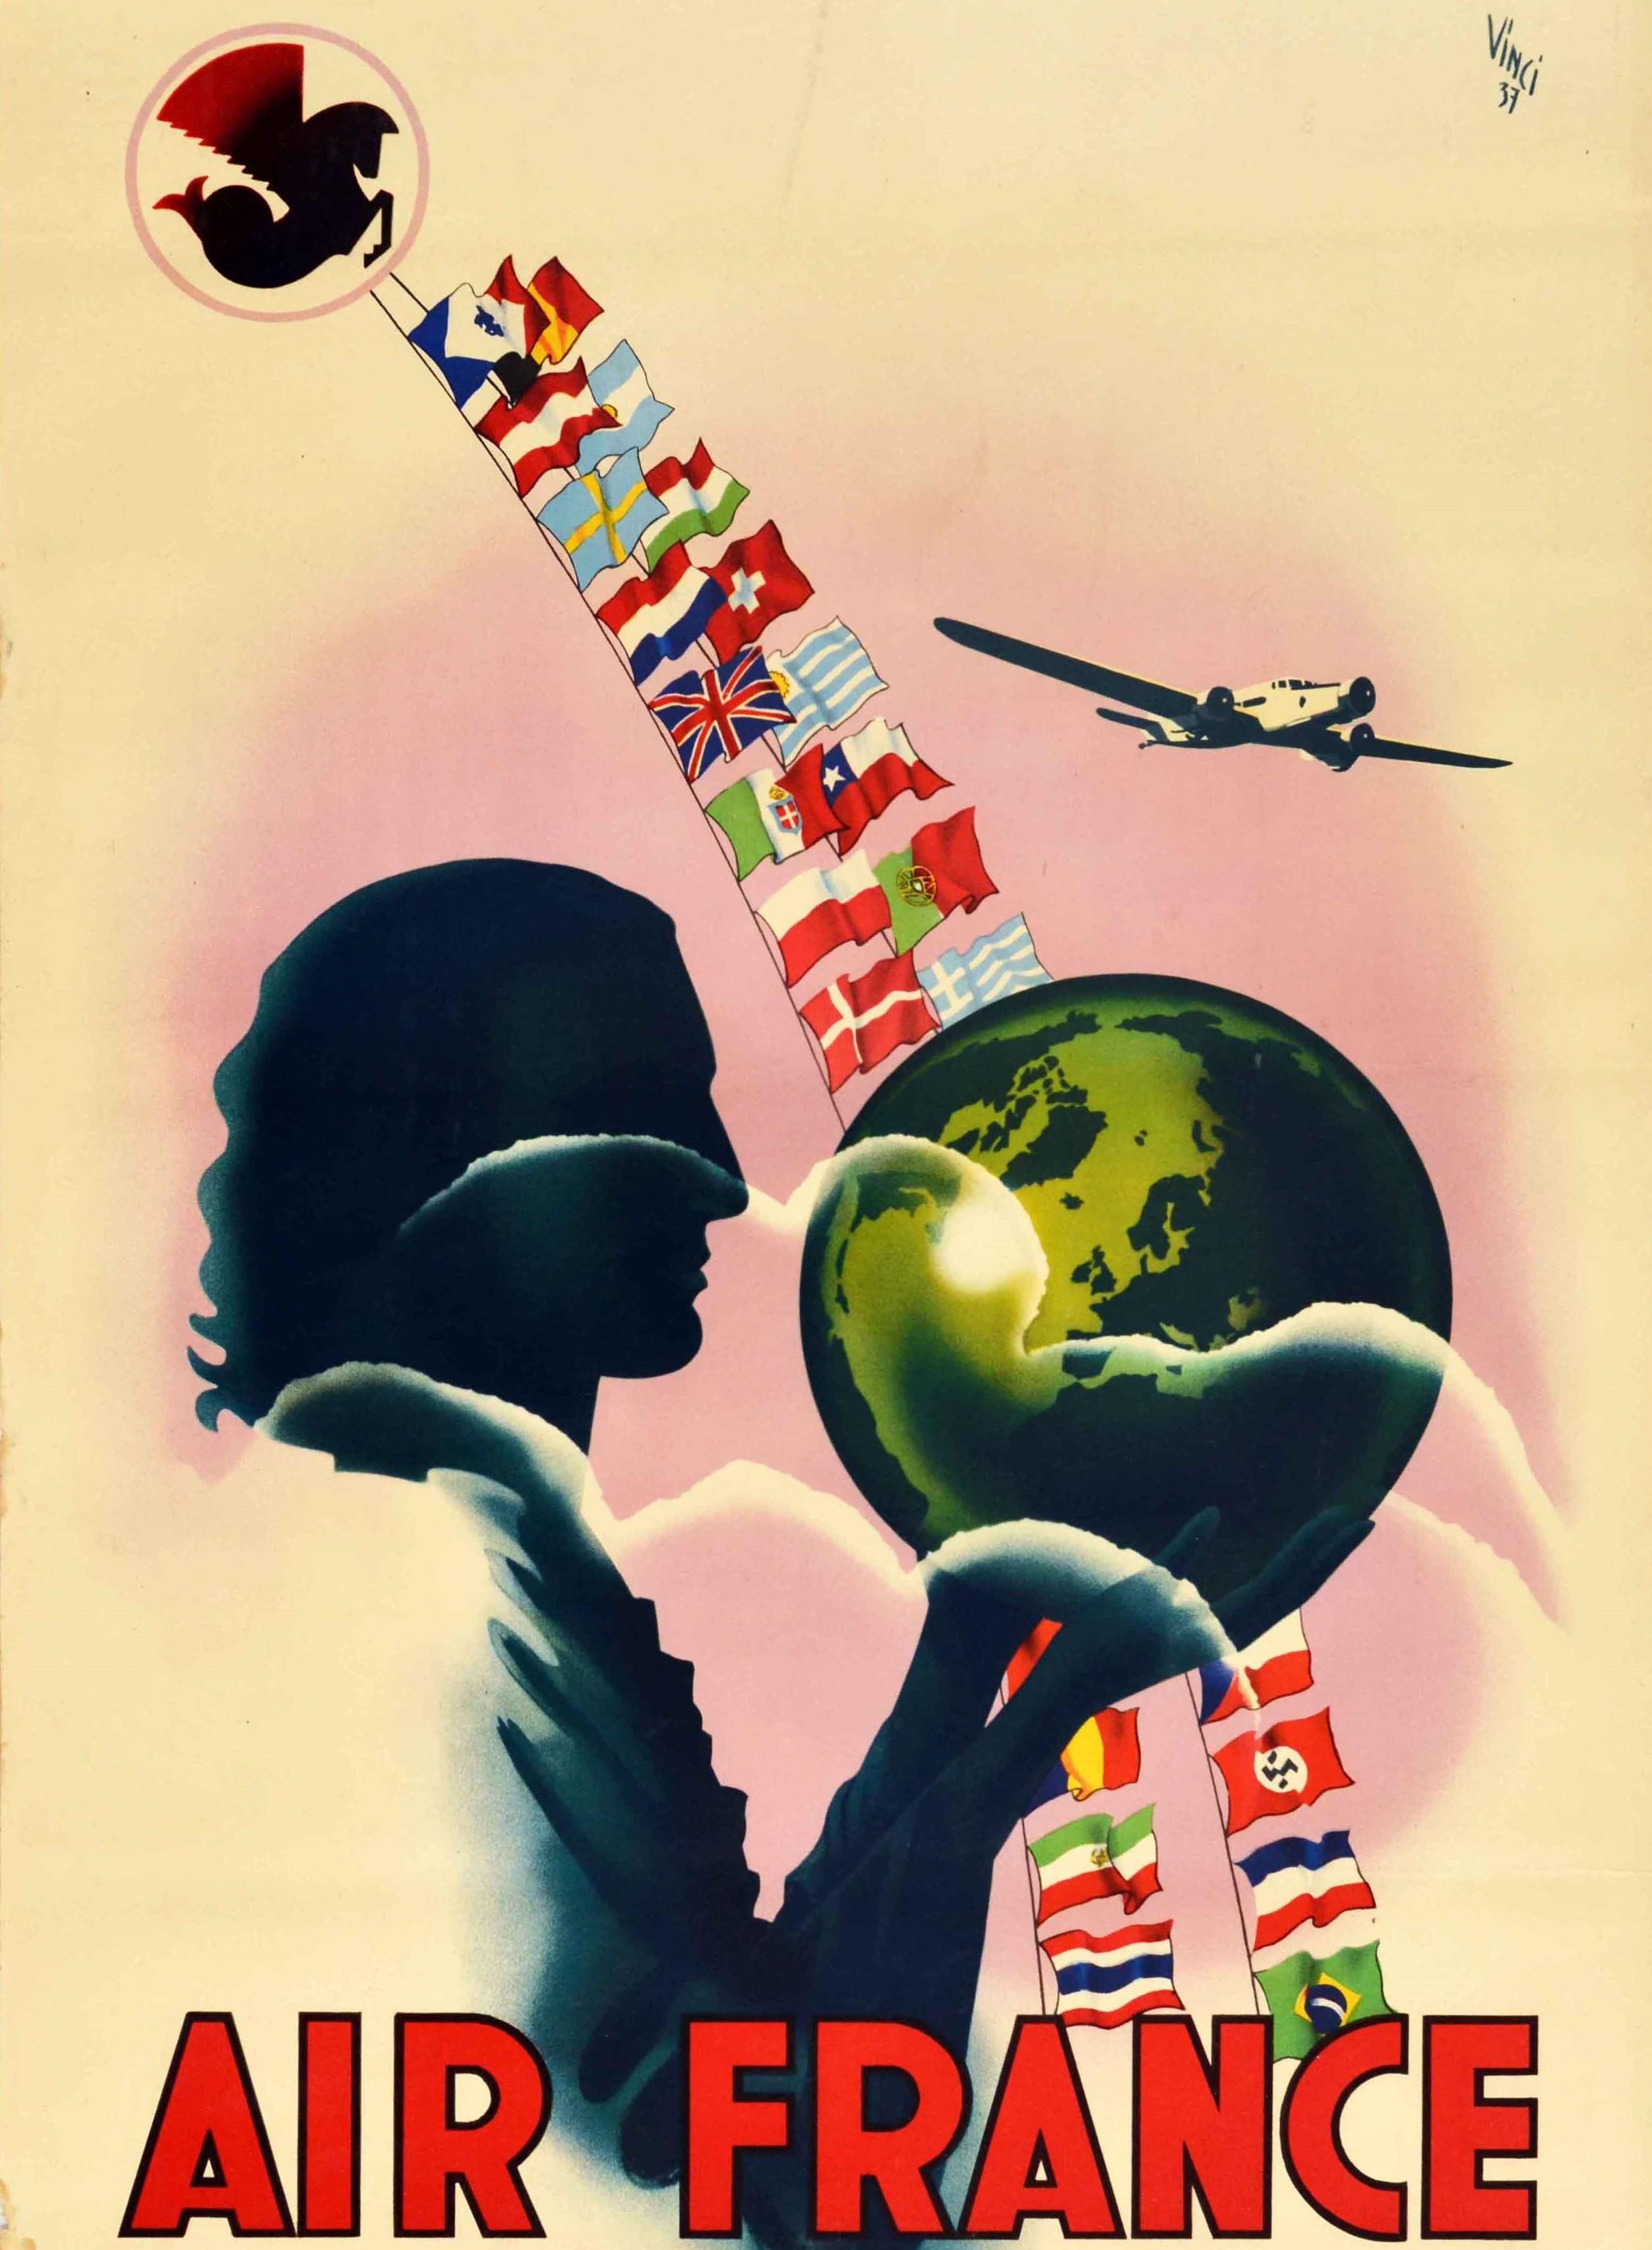 nato propaganda posters